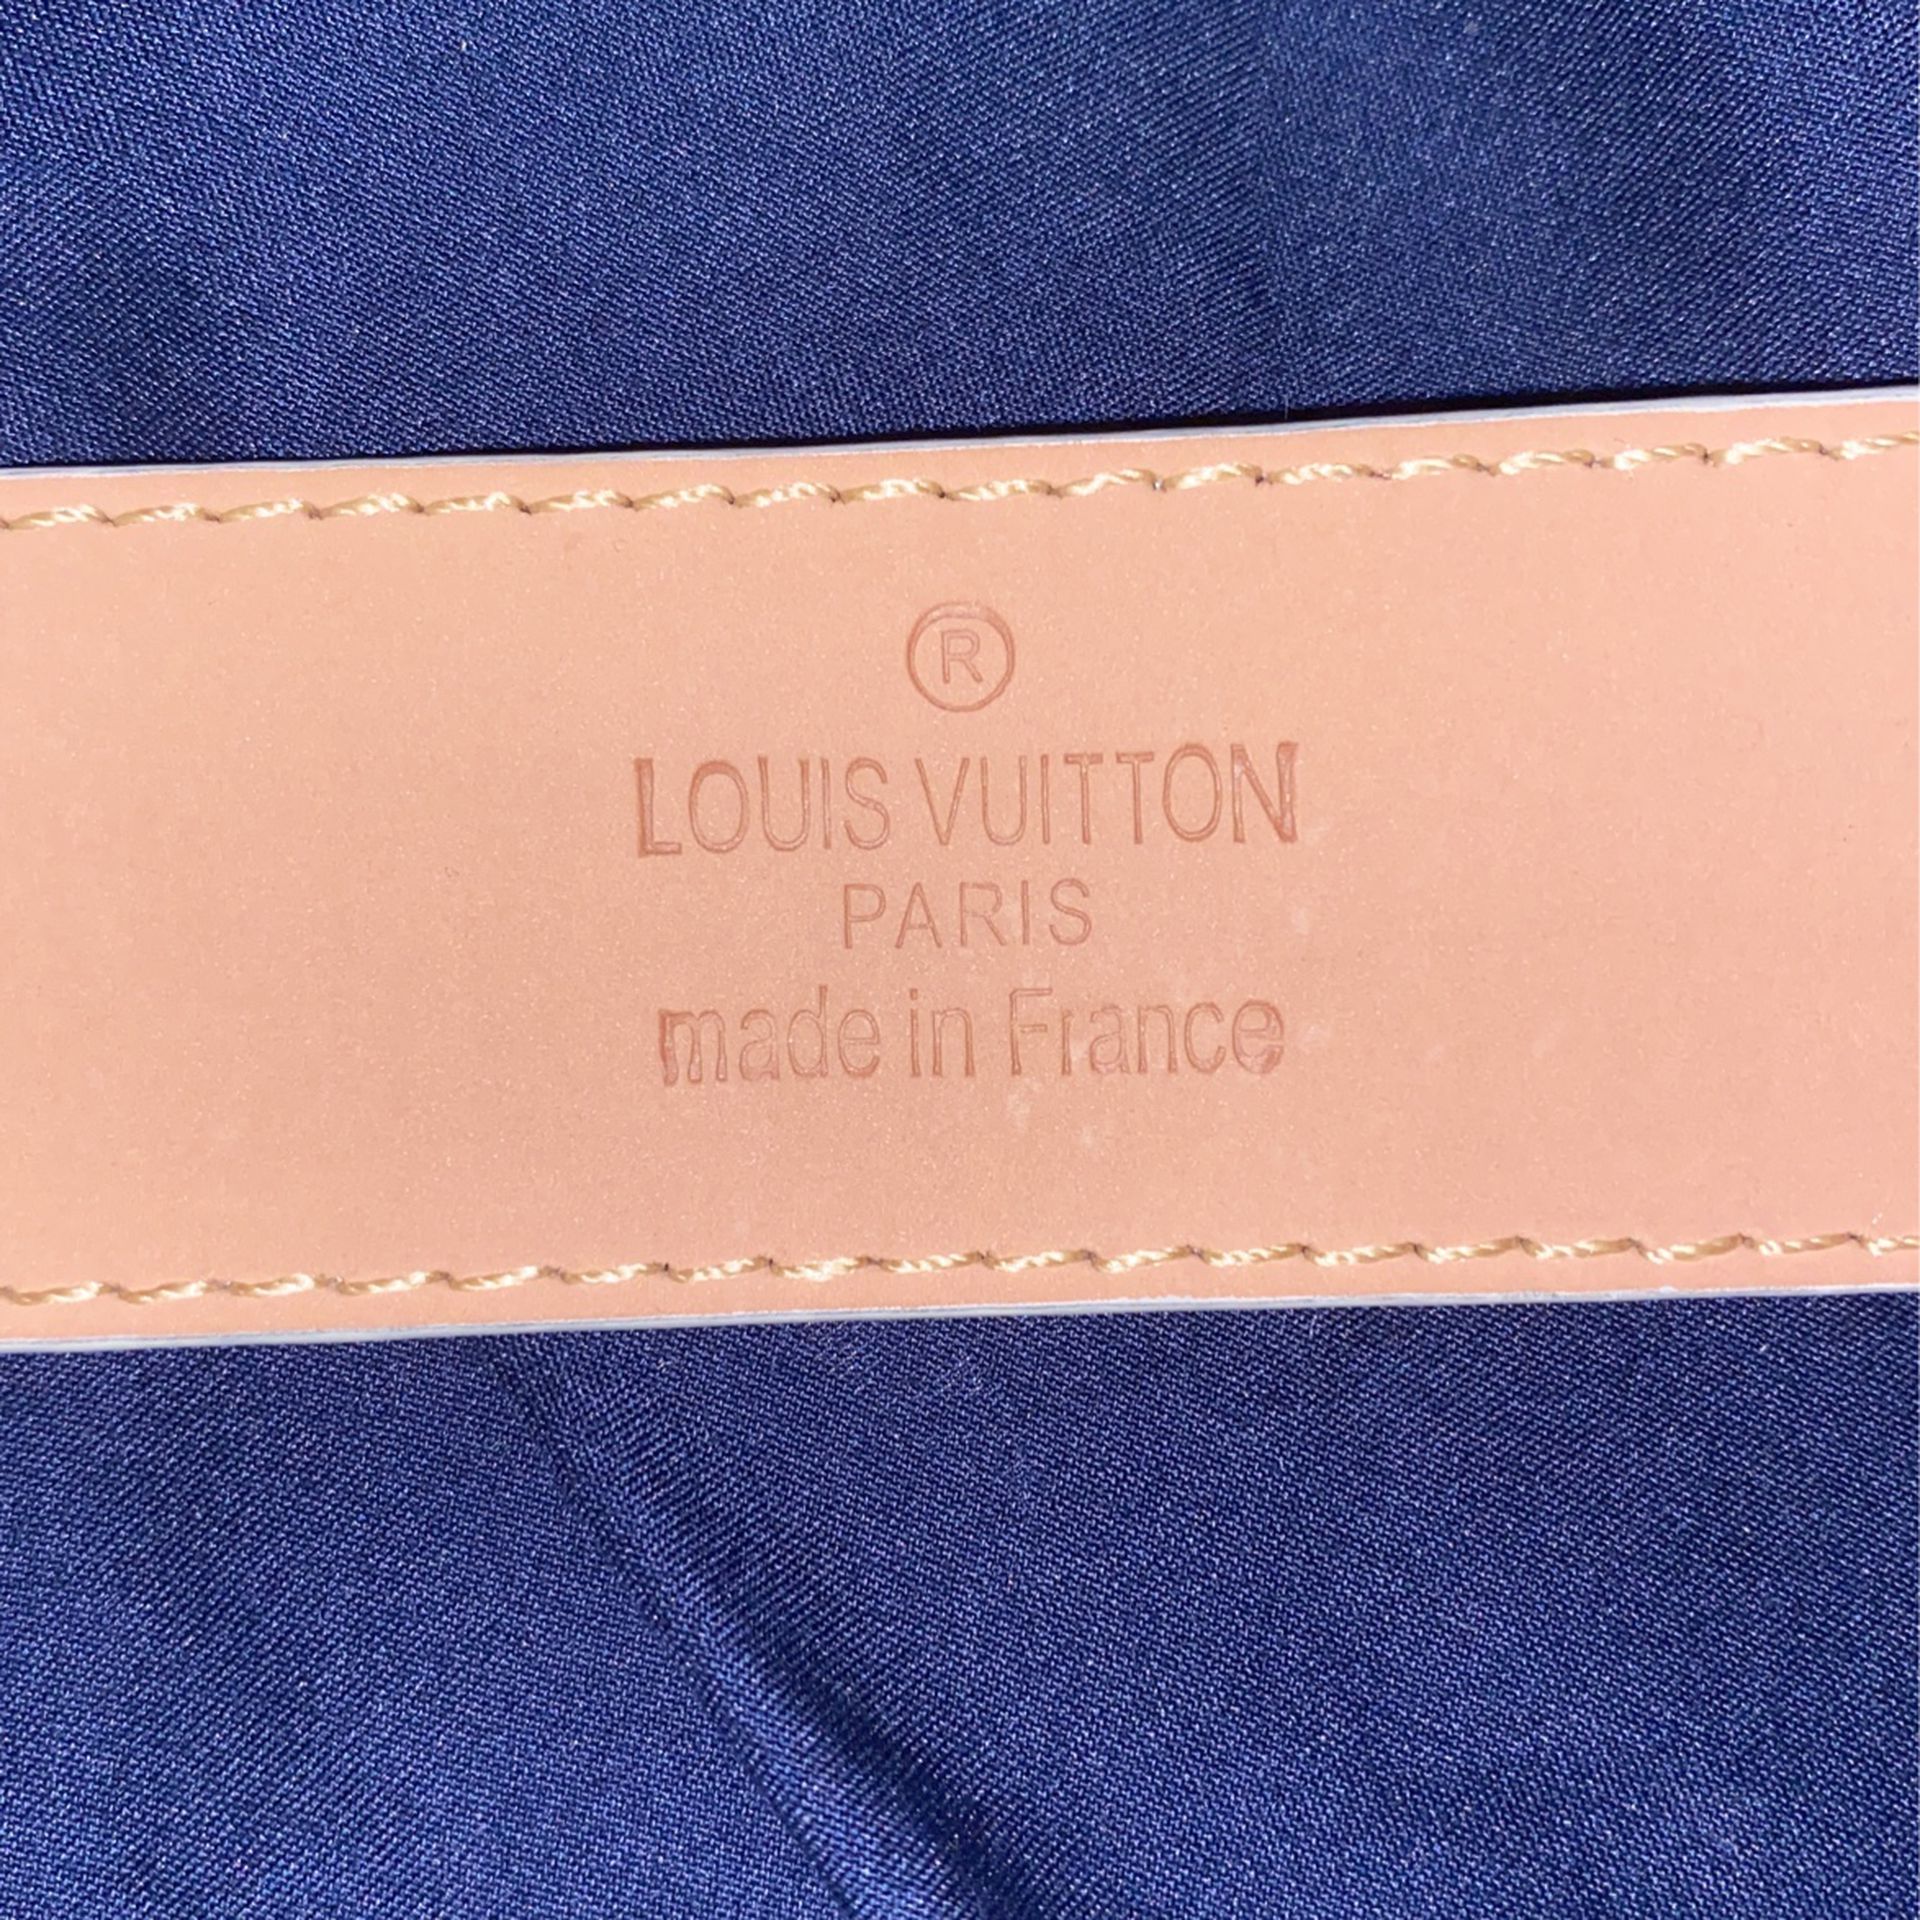 Mens Louis Vuitton Vanilla Damier Belt Size 36 Authentic for Sale in Mesa,  AZ - OfferUp